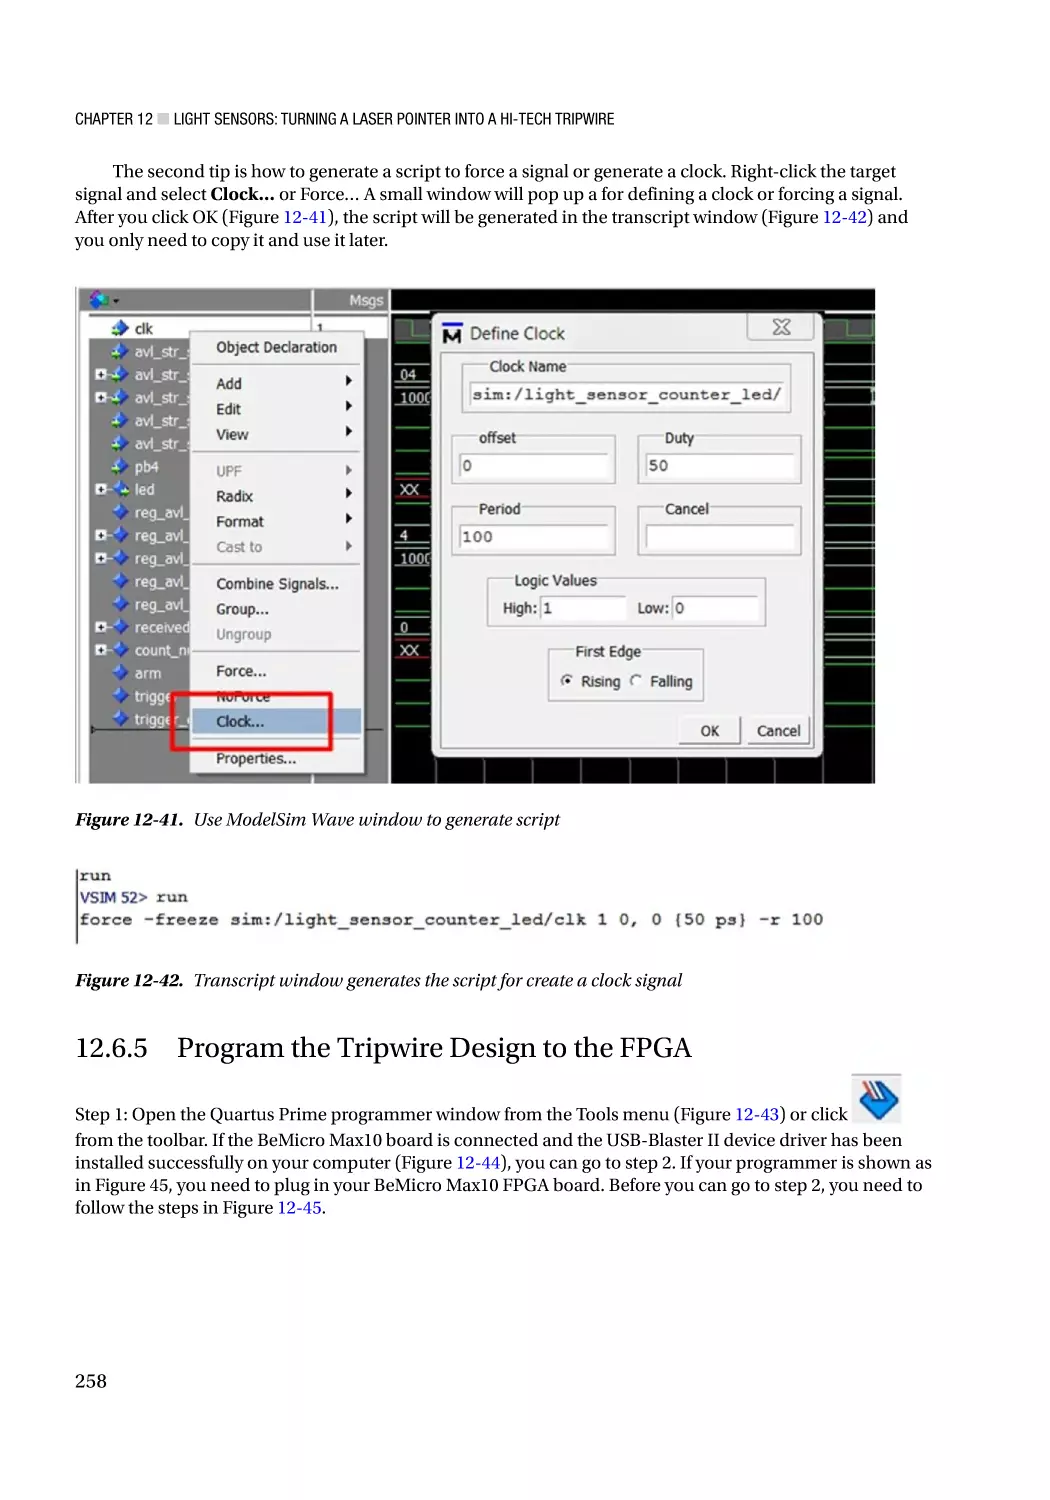 12.6.5 Program the Tripwire Design to the FPGA